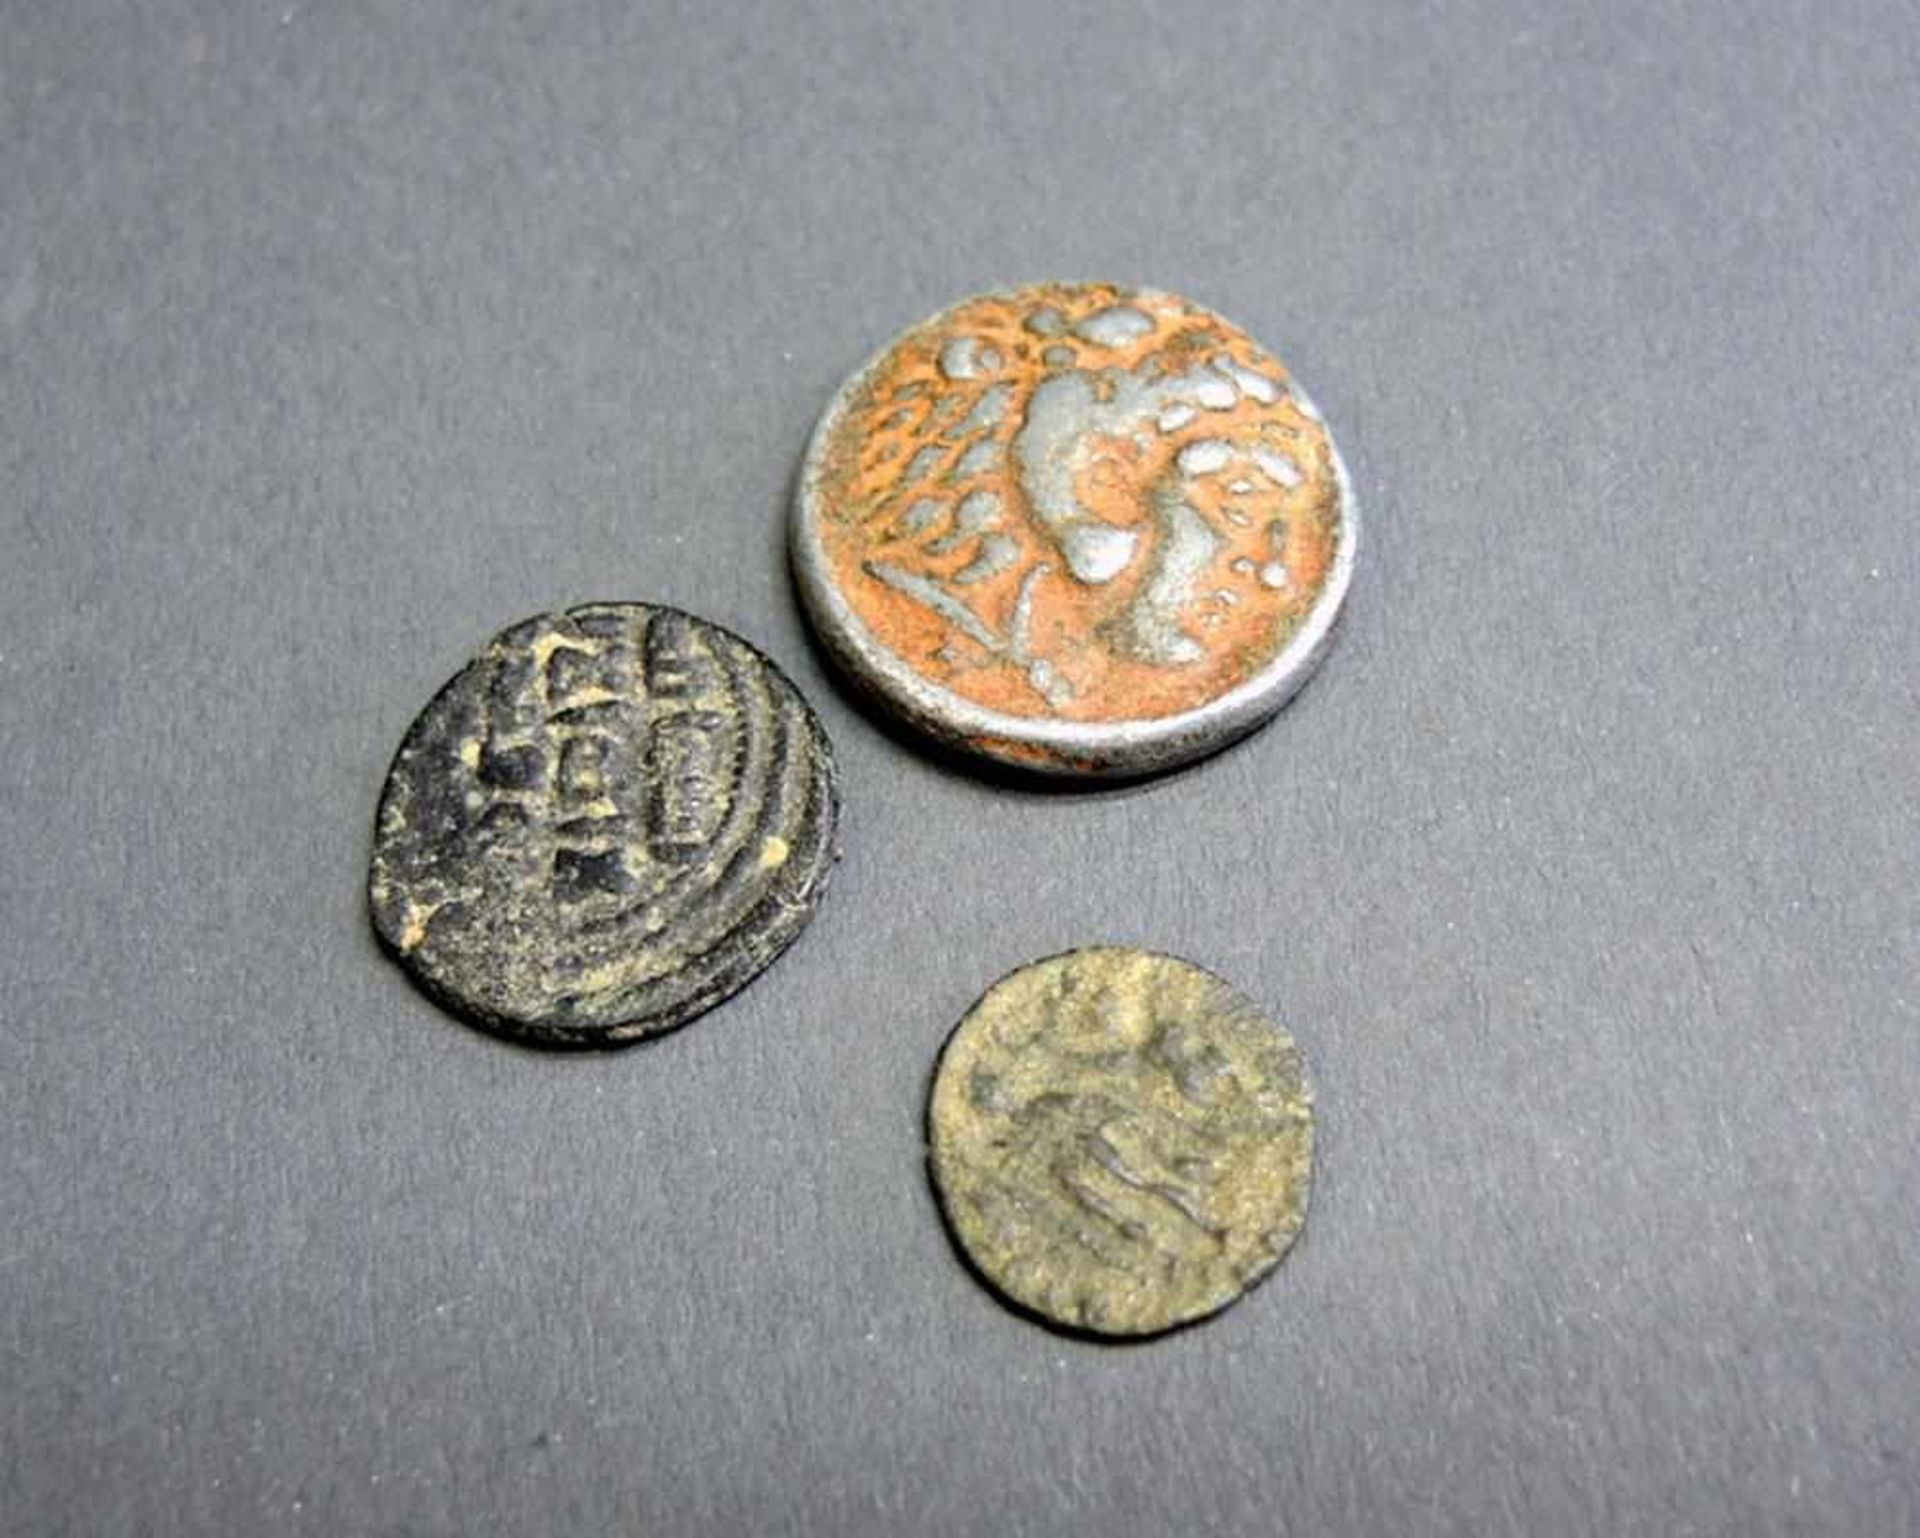 3 Münzen Darunter eine Drachme v. Alexander d. Großen und eine wohl von Kaiser Valentian I., u.a.